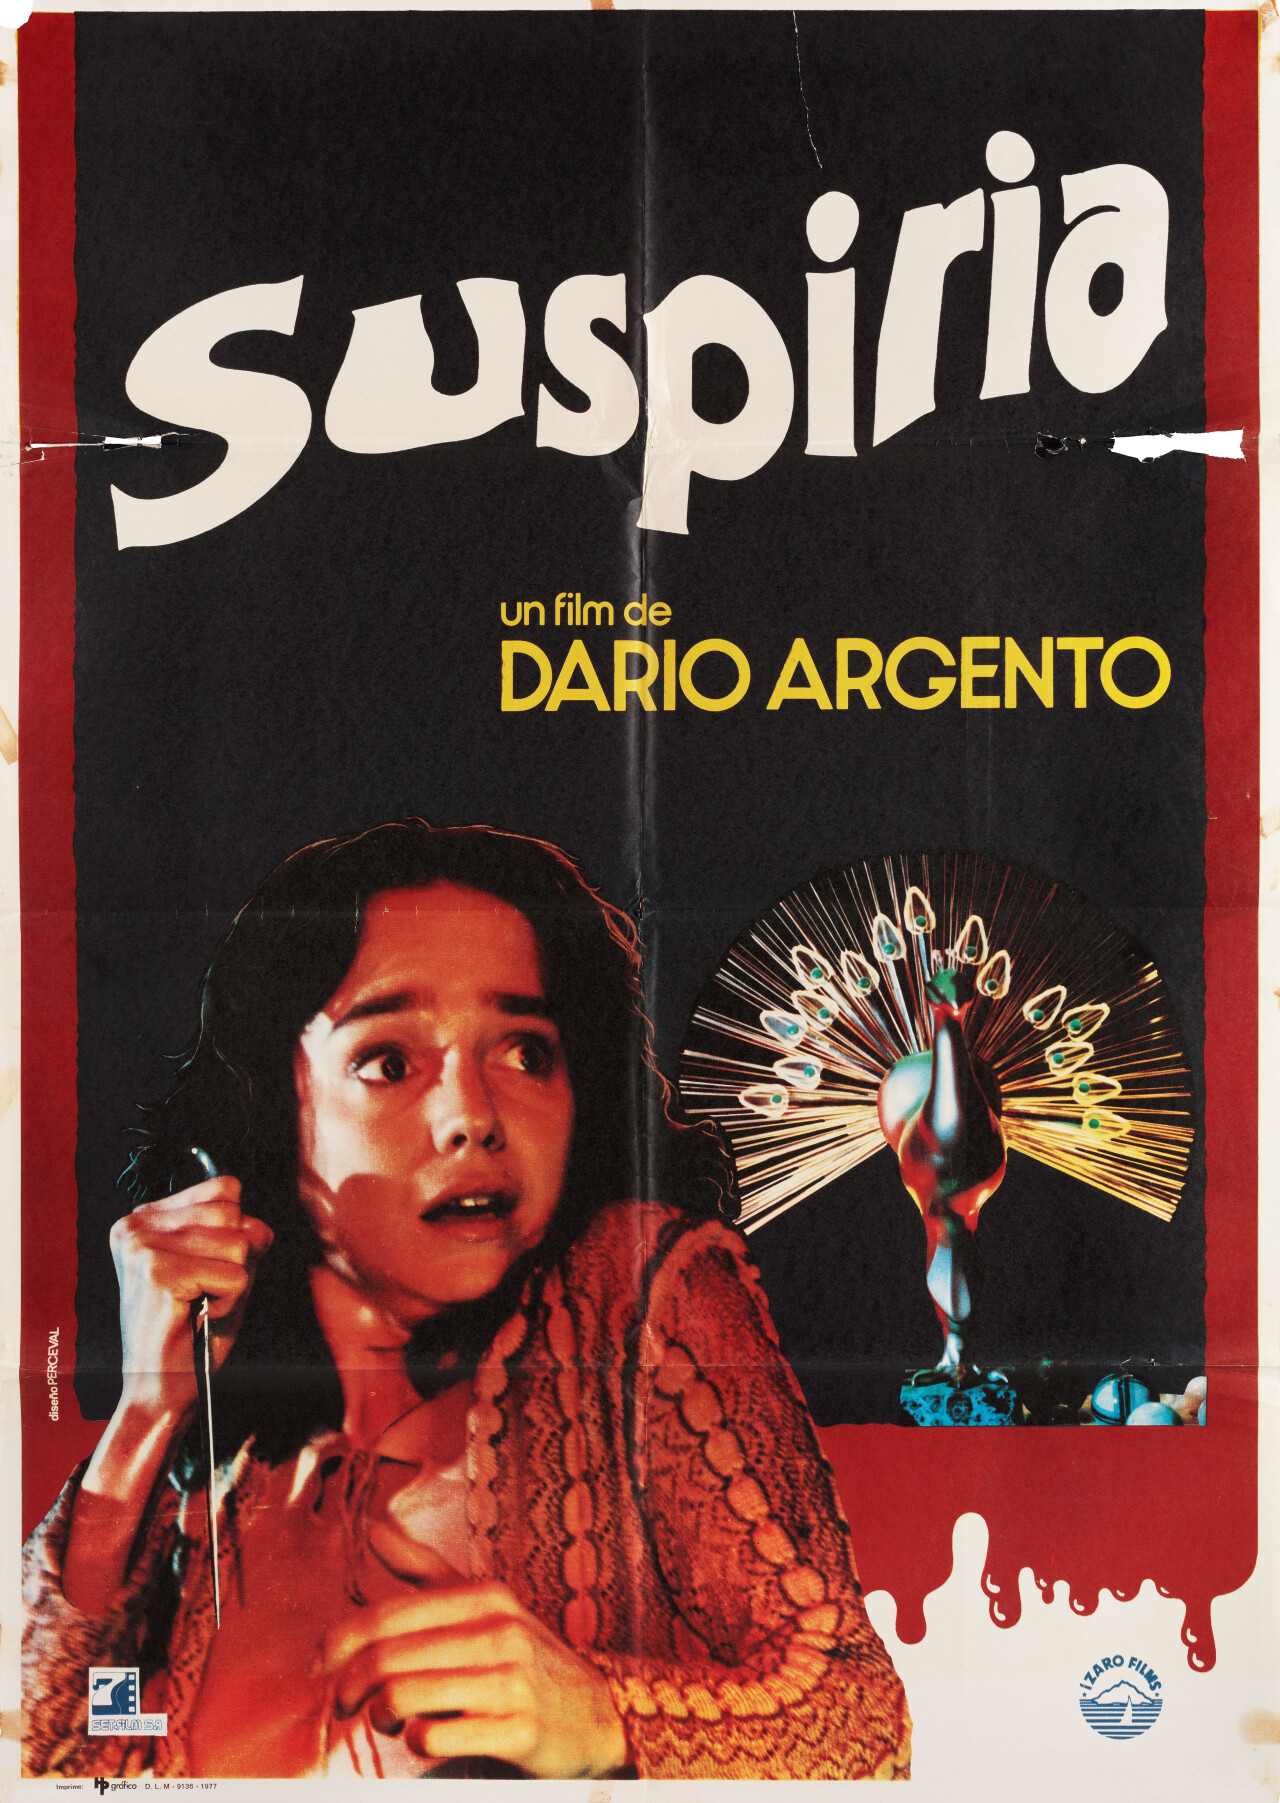 Суспирия (Suspiria, 1977), режиссёр Дарио Ардженто, испанский постер к фильму (ужасы, 1977 год)